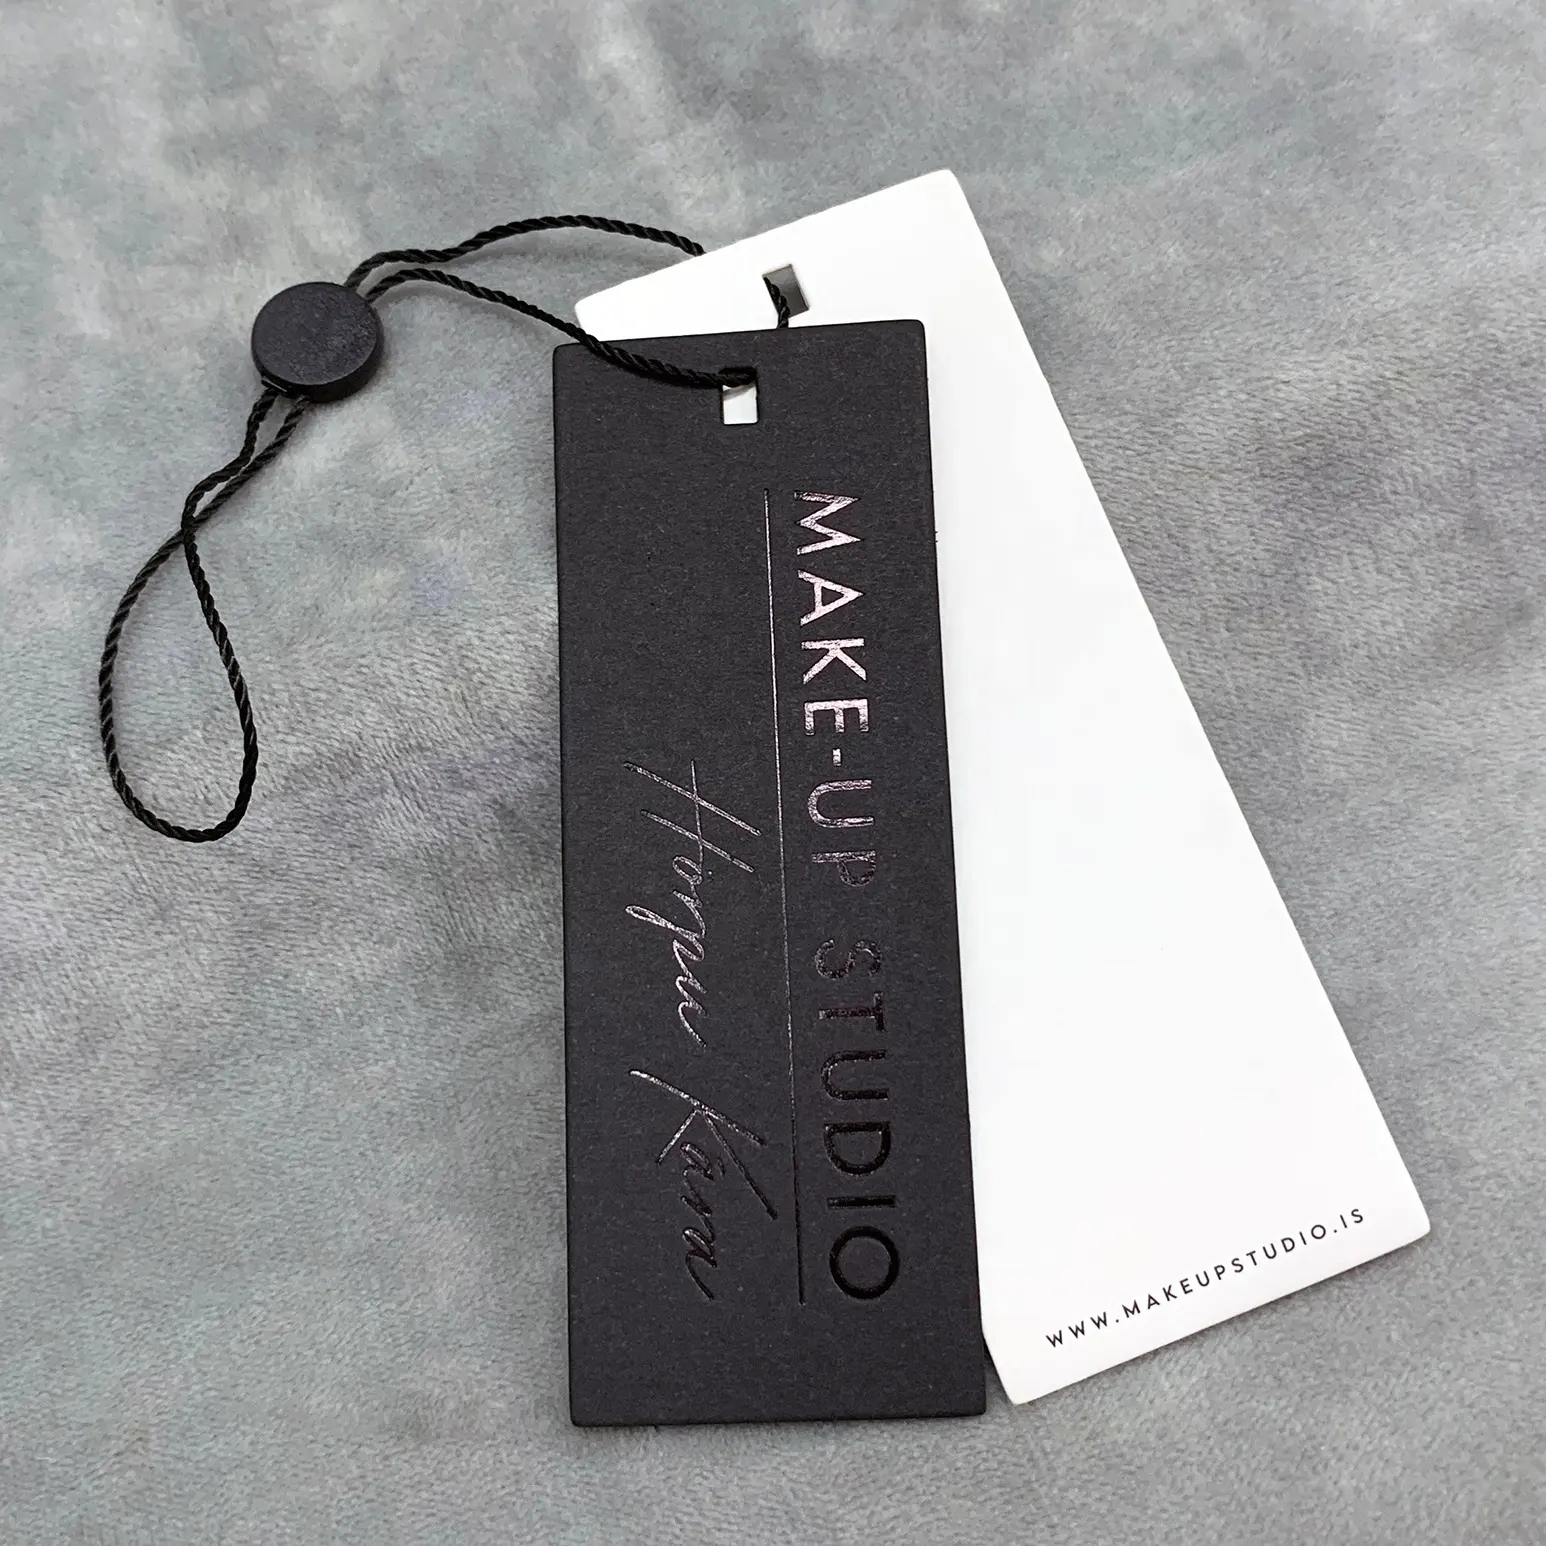 Etiqueta colgante en relieve personalizada Etiquetas colgantes de marca de regalo de cartón especial para etiquetas de ropa